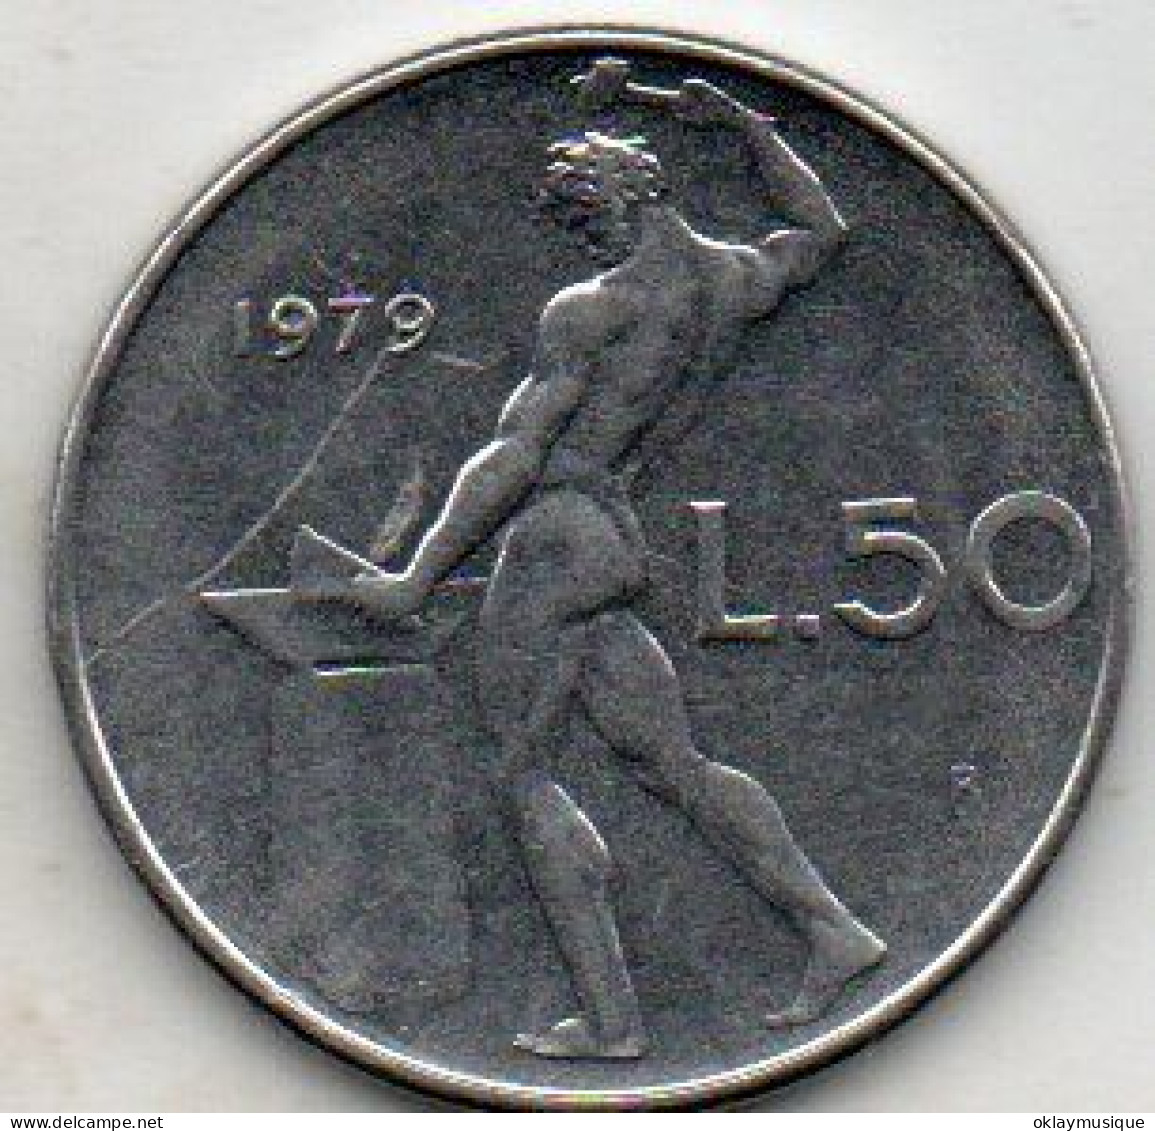 Italie 50 Lires 1979 - 50 Lire